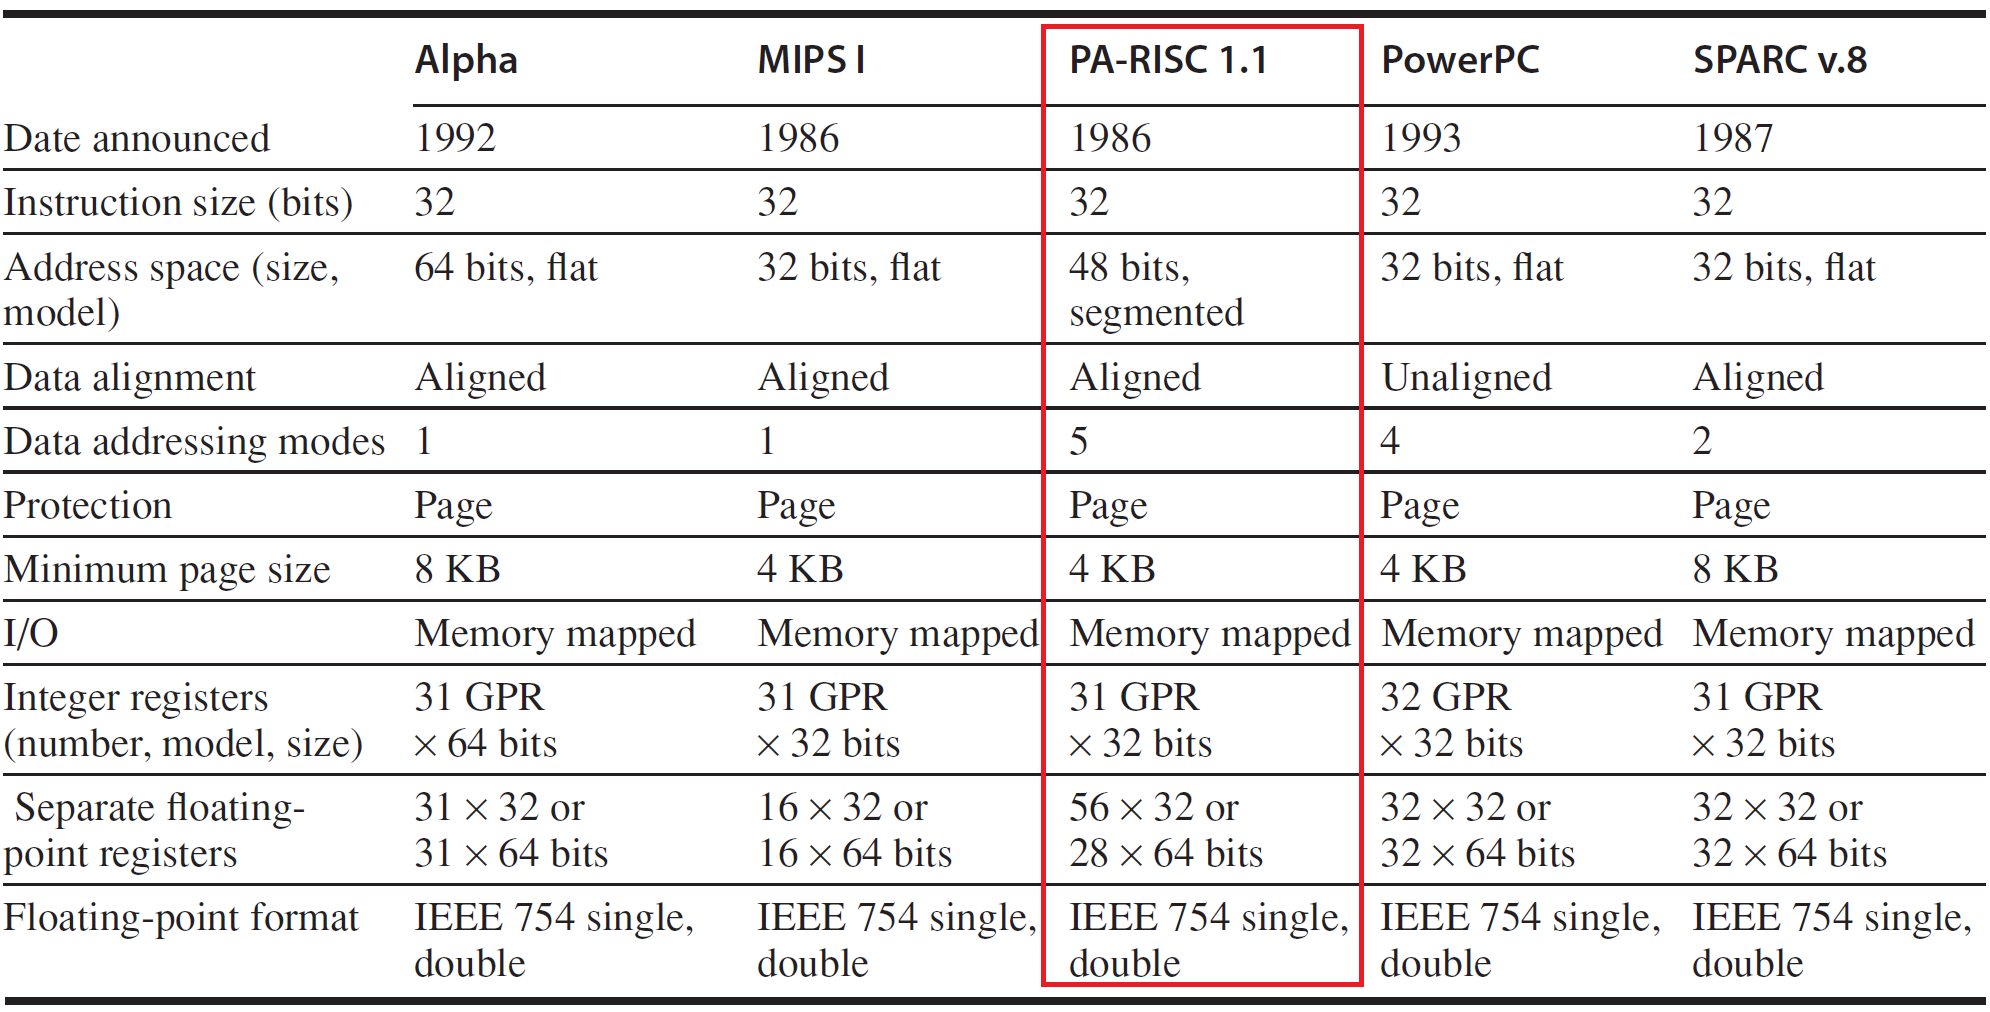 照片中提到了Alpha、MIPS I、PA-RISC 1.1，包含了音樂、線、字形、數、儀表